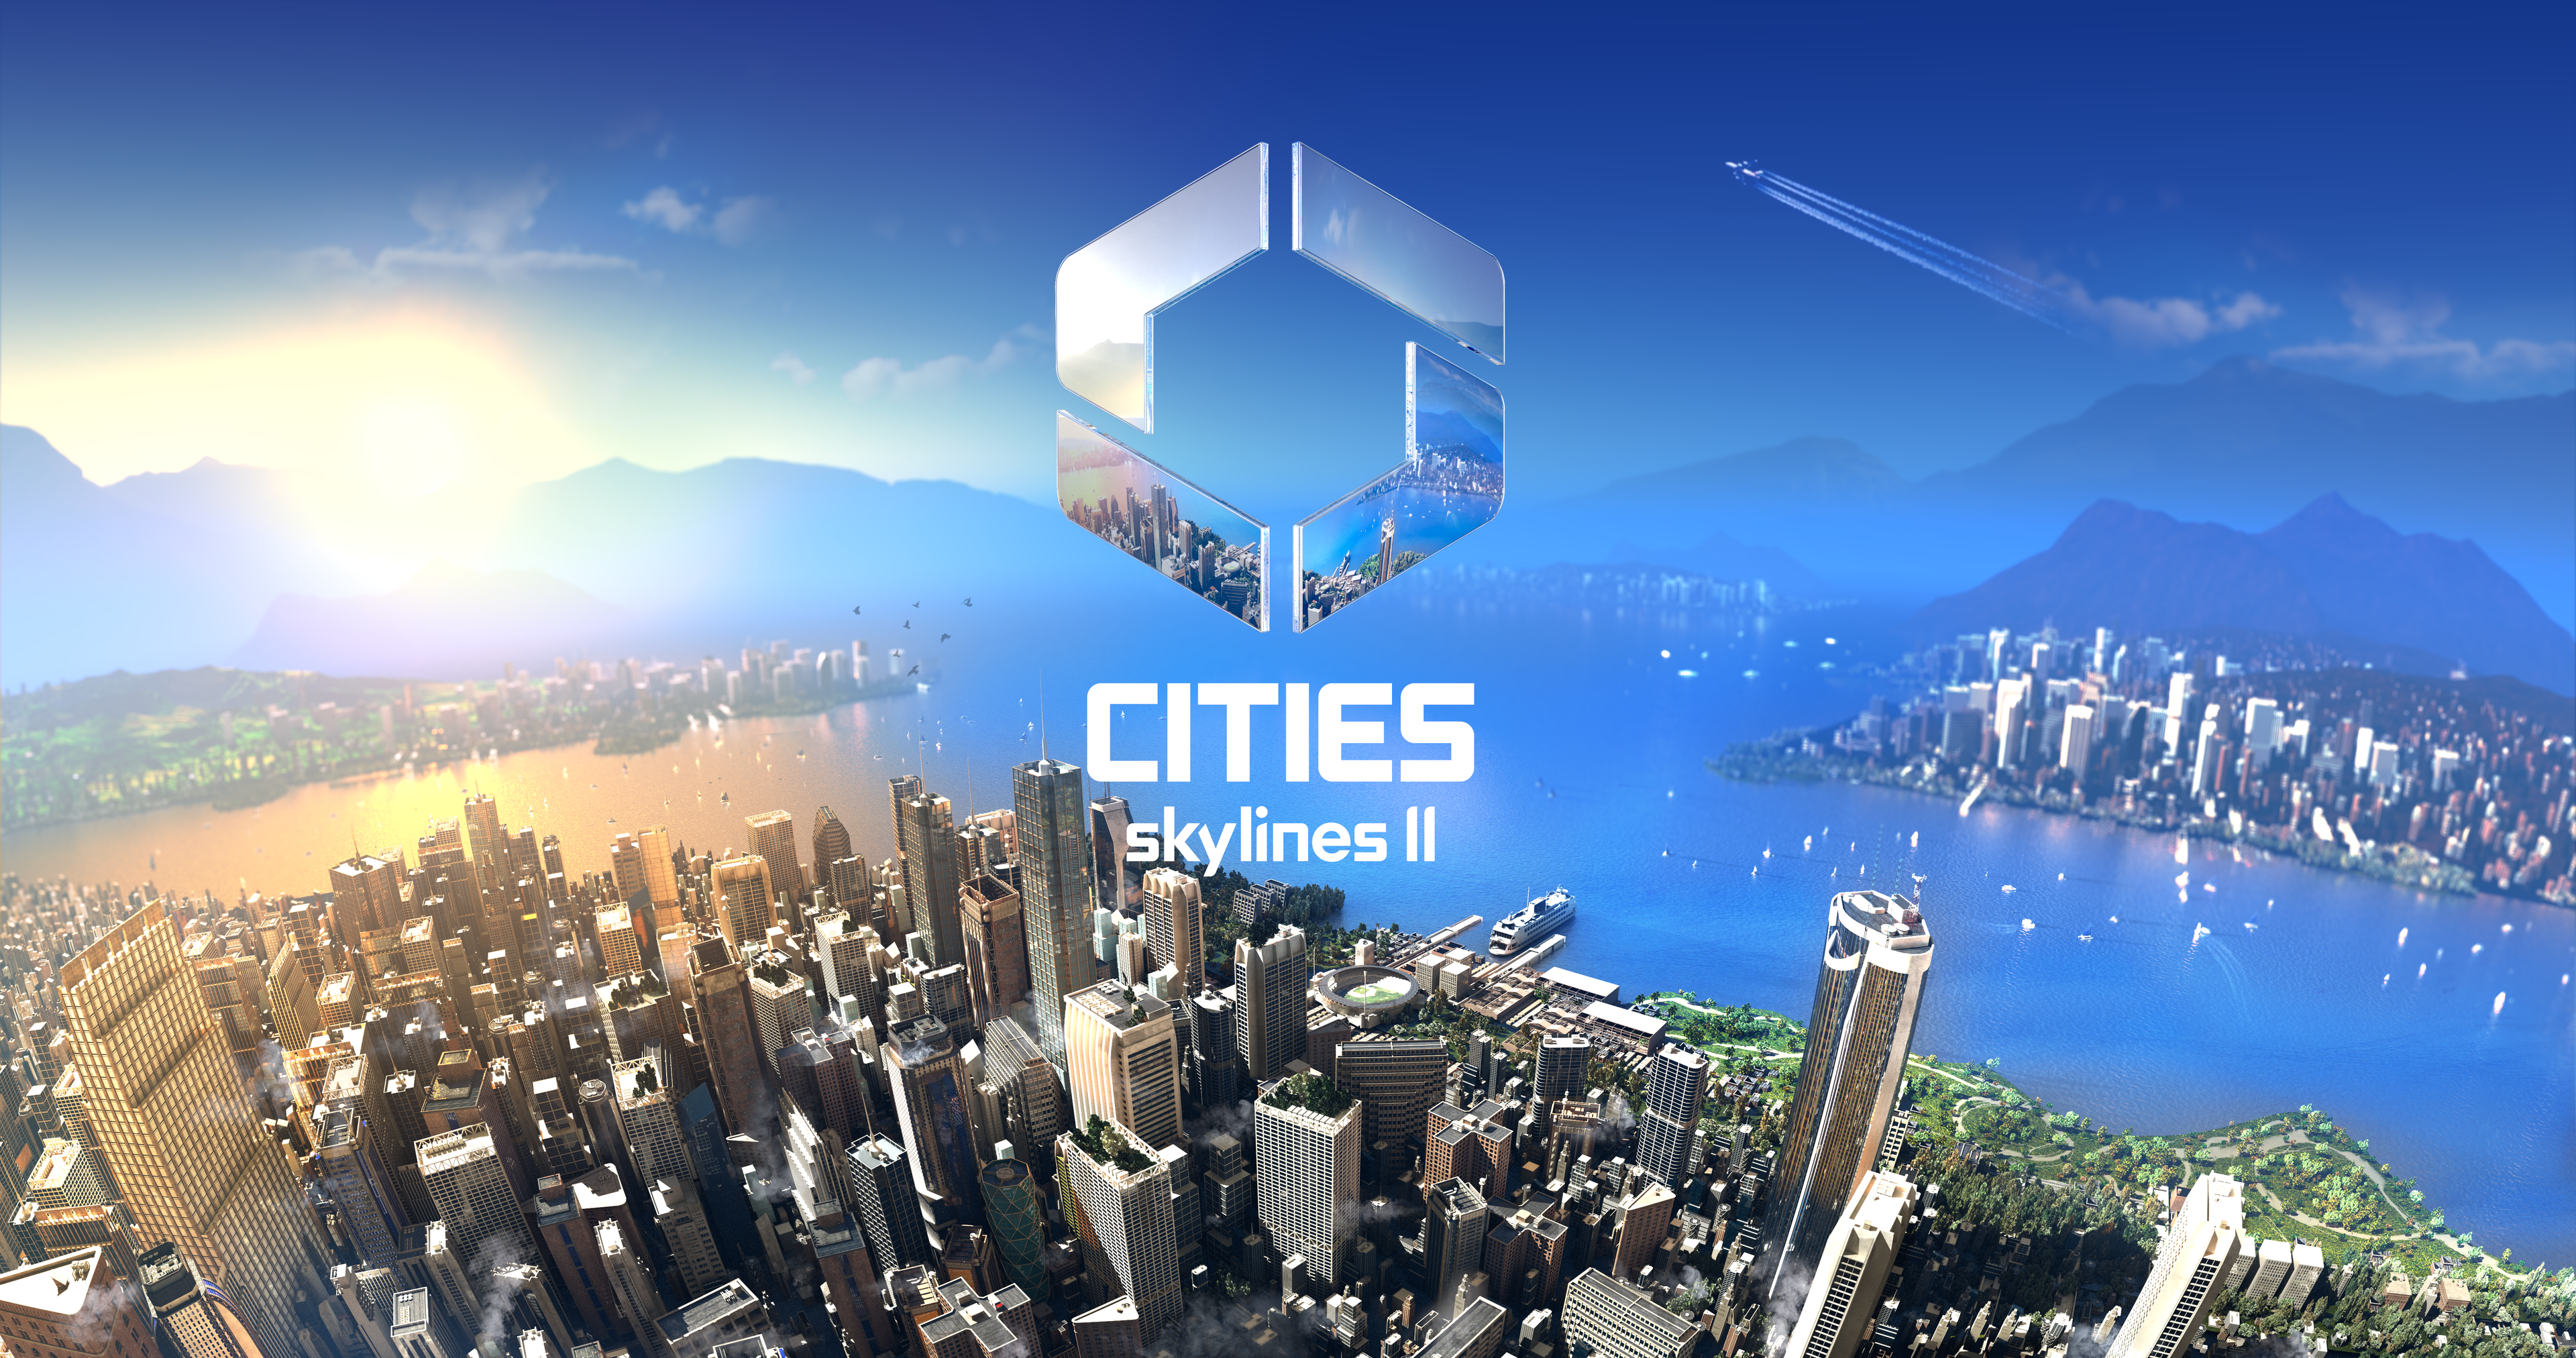 Collosal Order har "lärt sig mycket" av feedback från Cities Skylines community